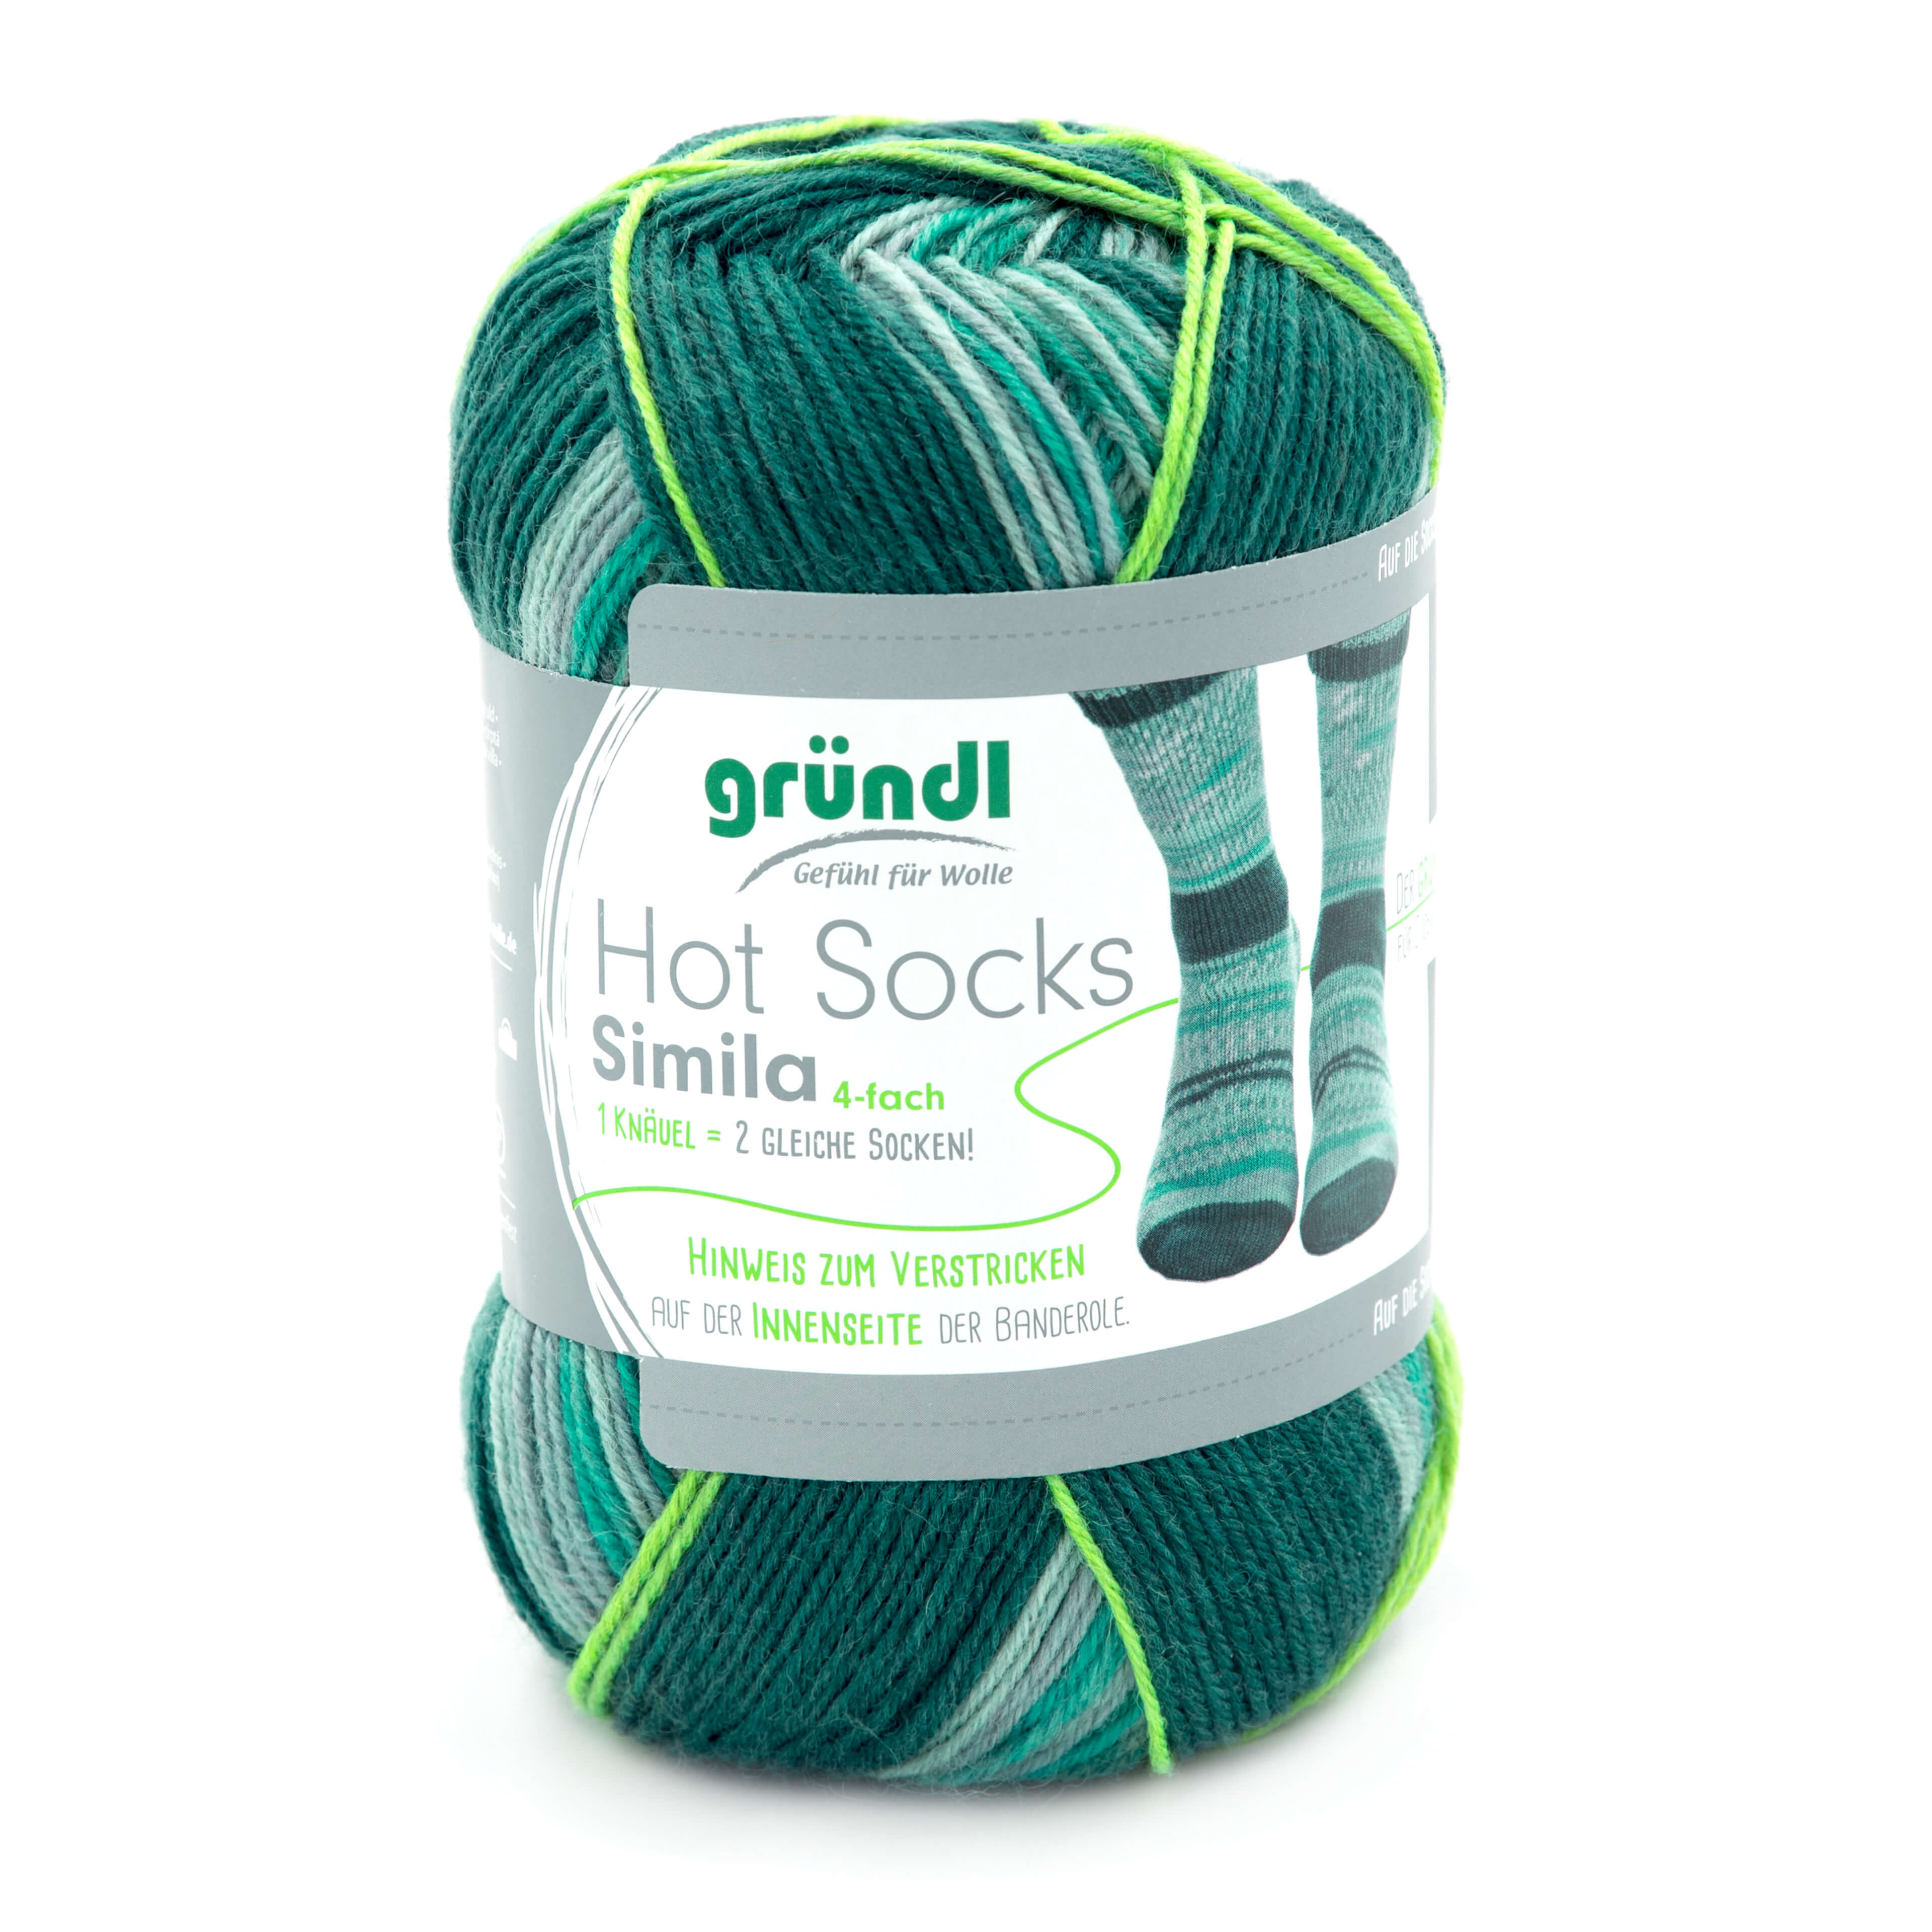 Hot Socks Simila